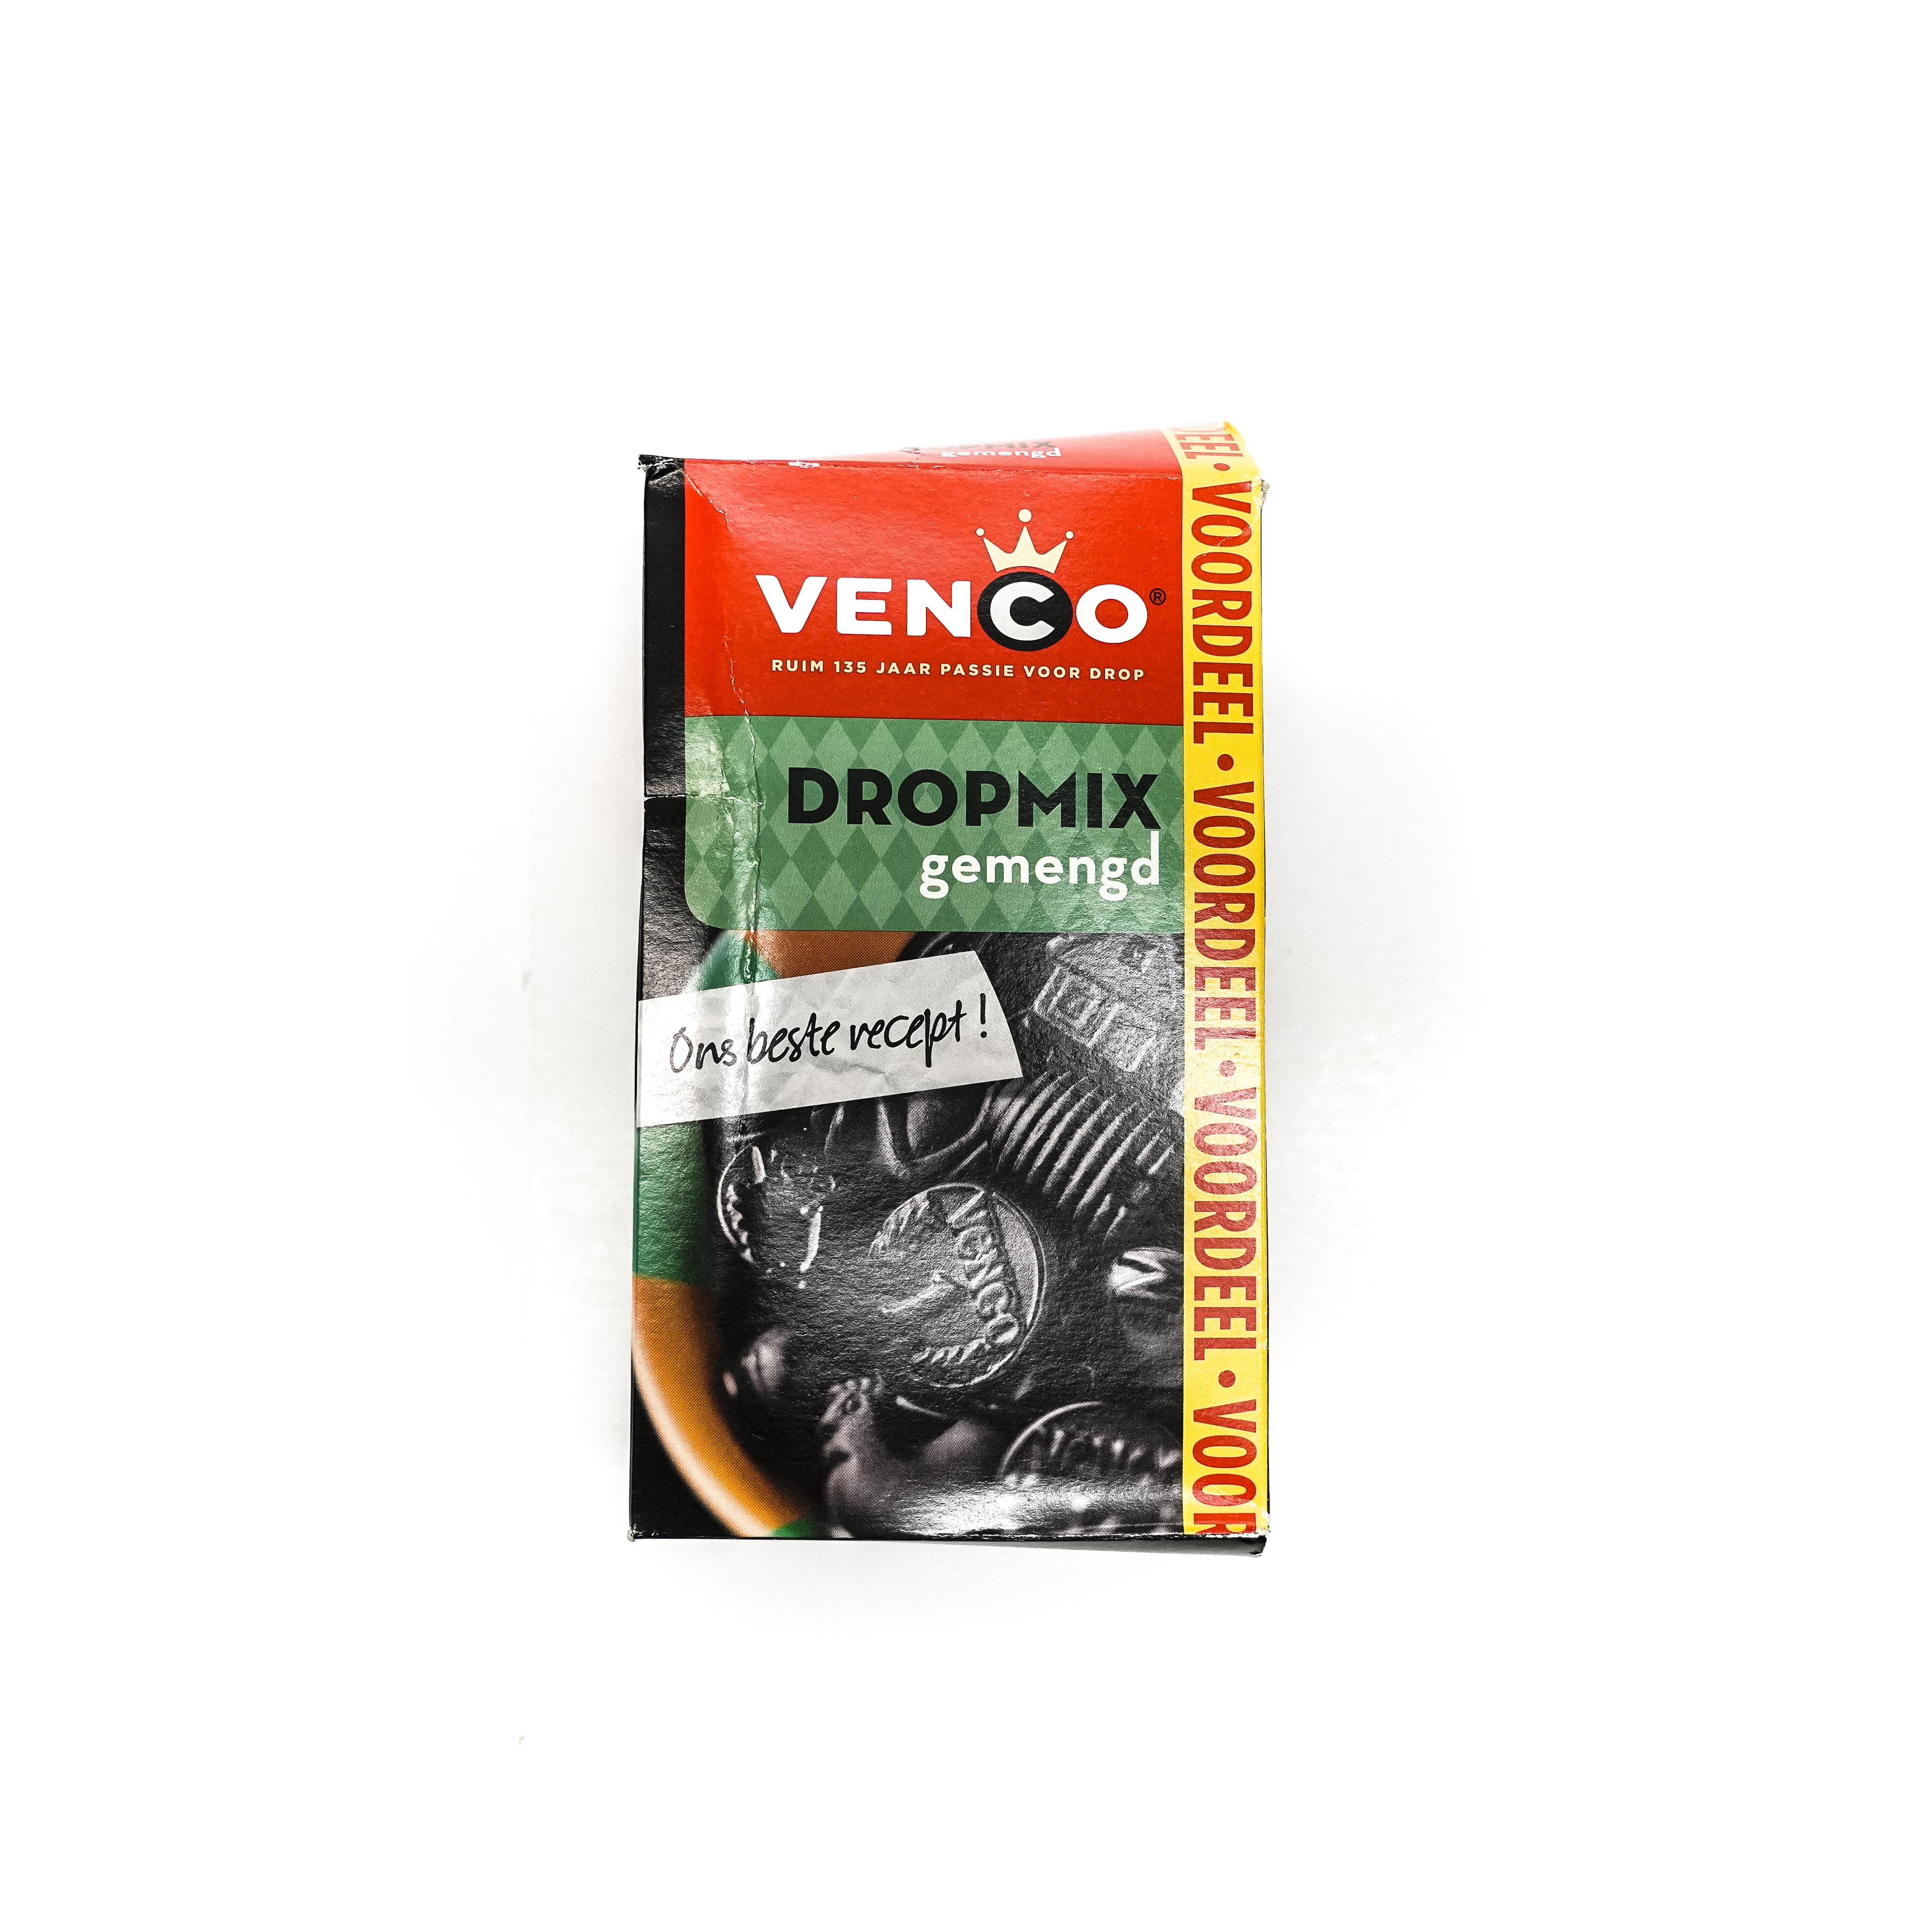 Venco Sweet & Salty Licorice Mix Box